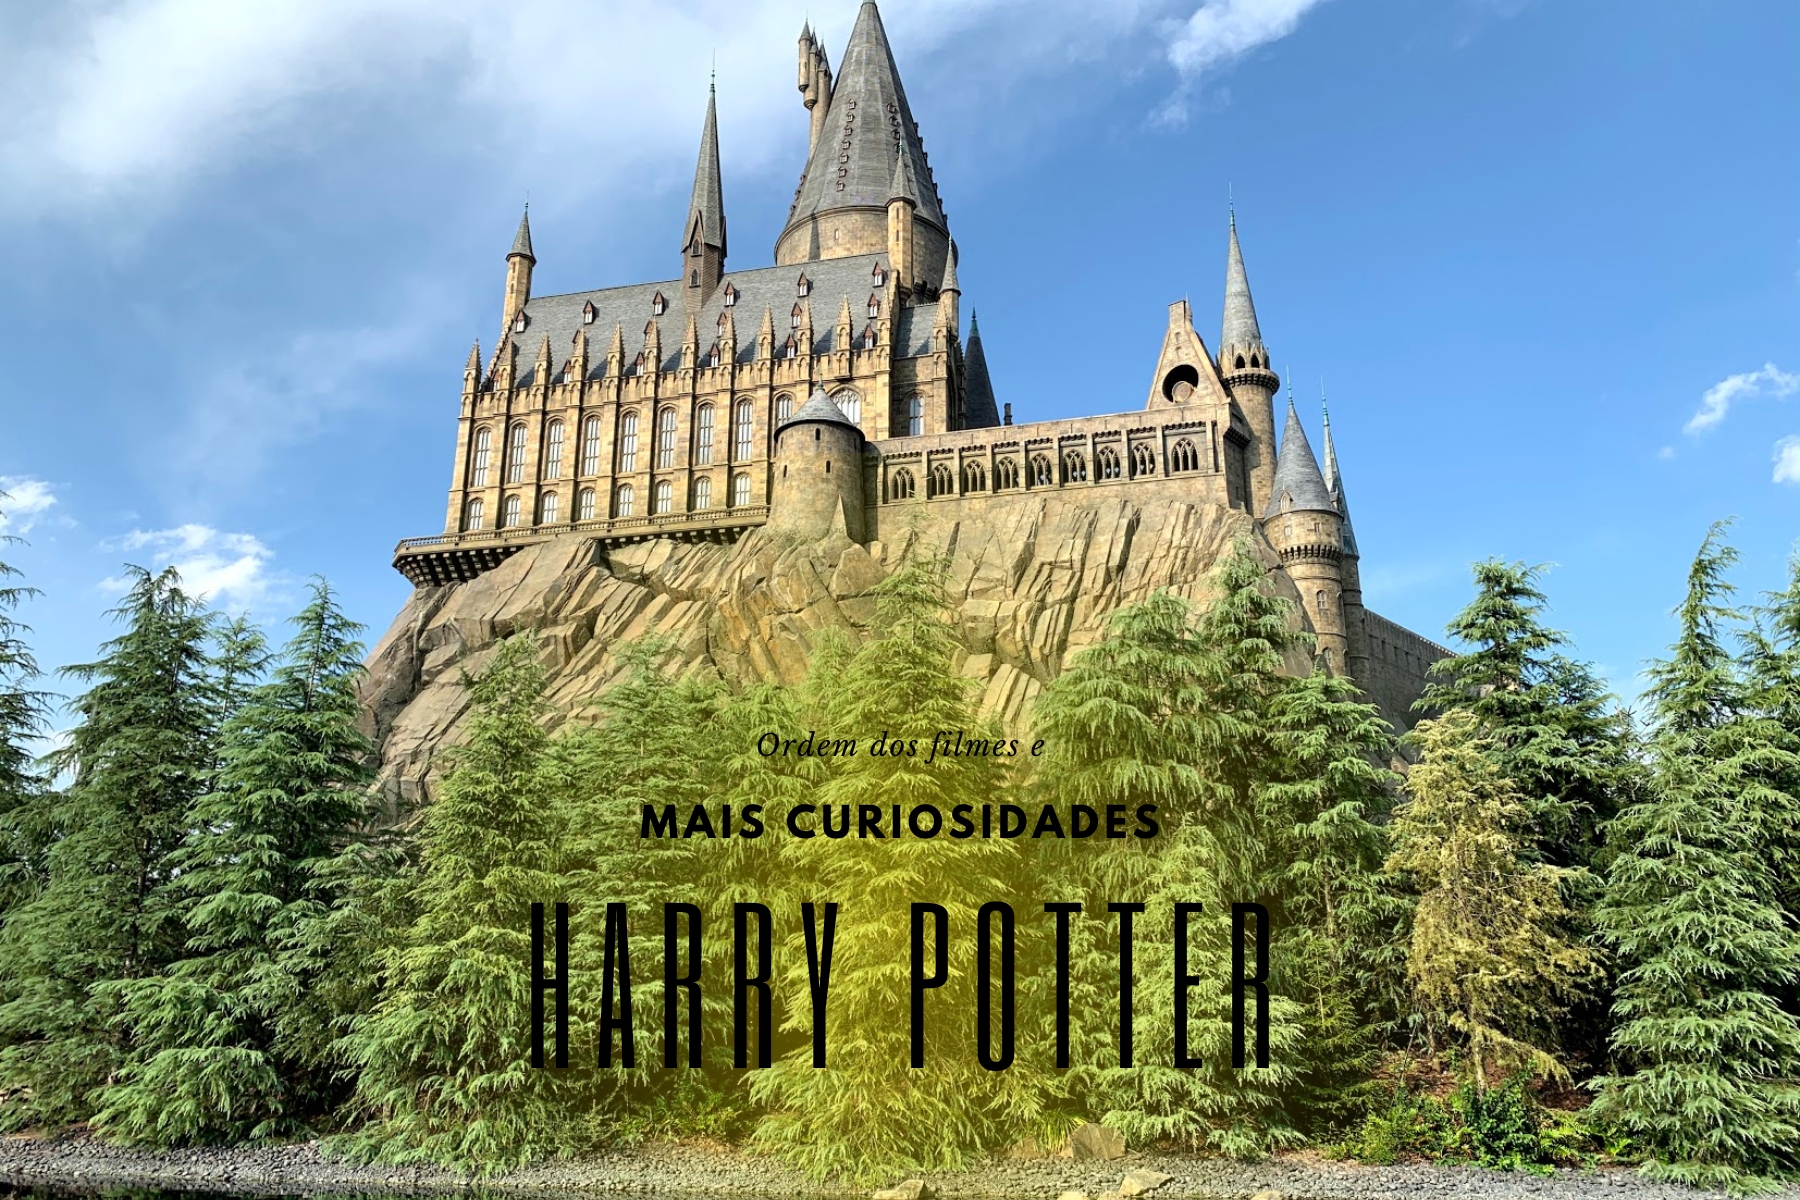 Descubra a ordem cronológica dos filmes Harry Potter e curiosidades fascinantes sobre a série mágica que conquistou o mundo.